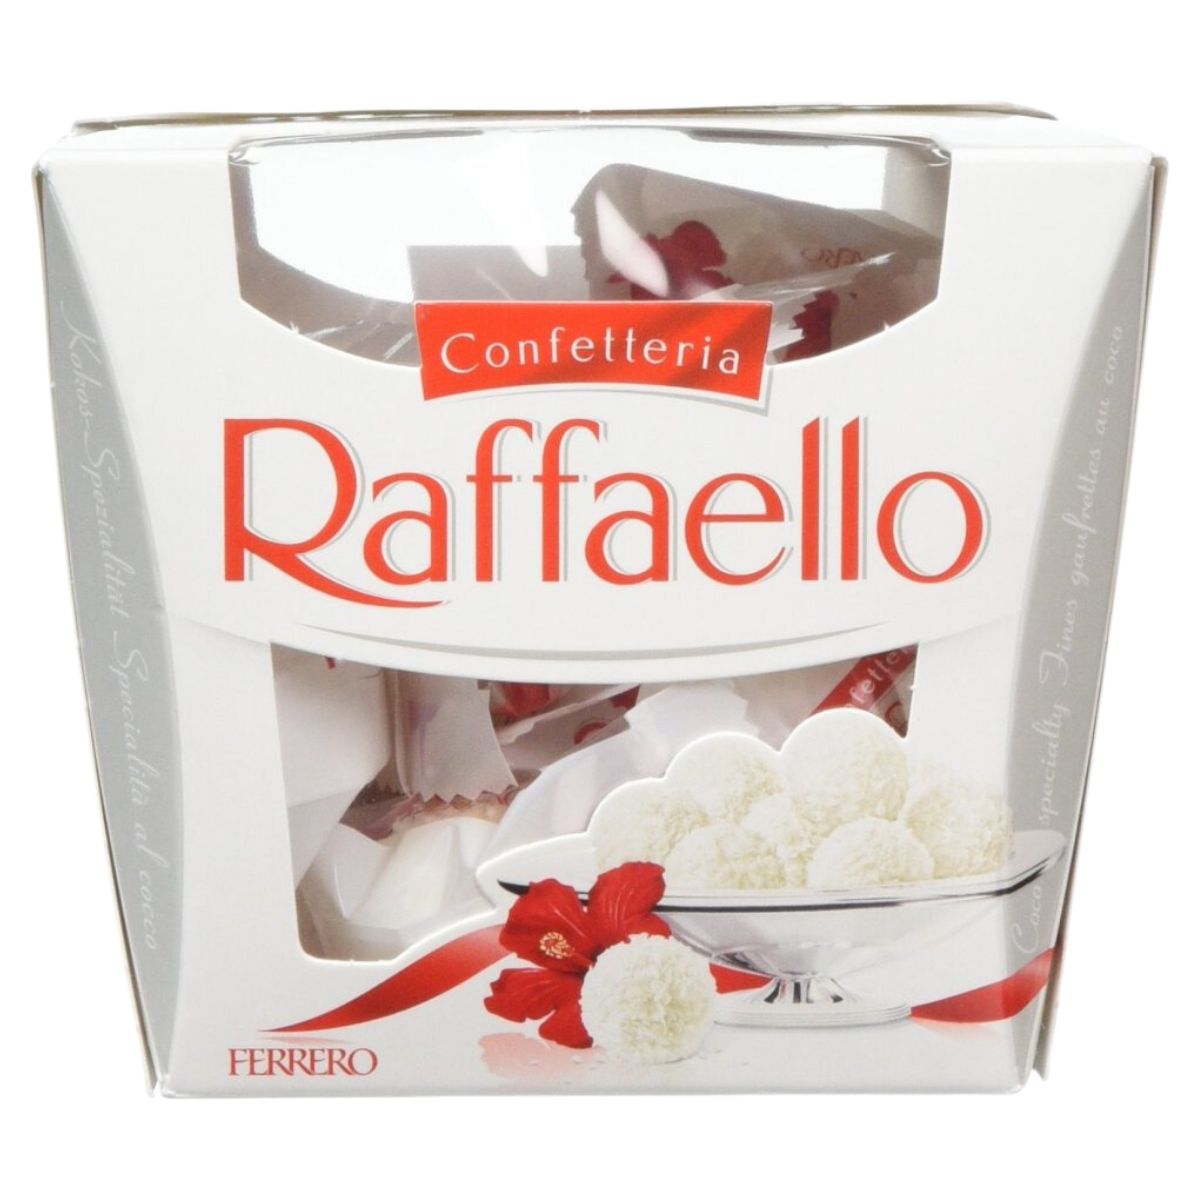 A box of Confetteria - Raffaello - 150g in a white box.